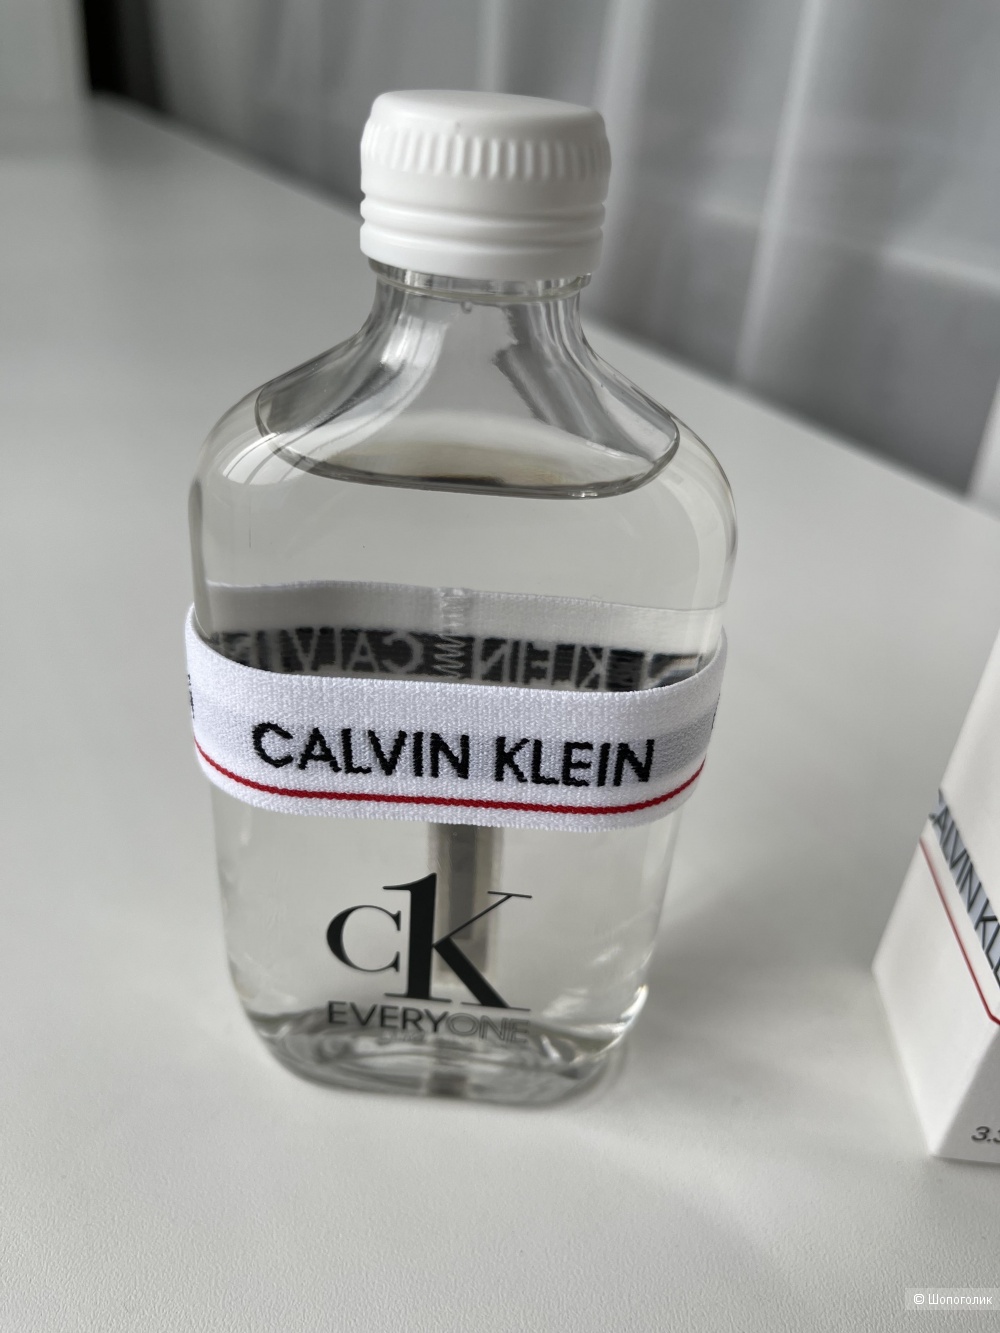 Calvin Klein everyone